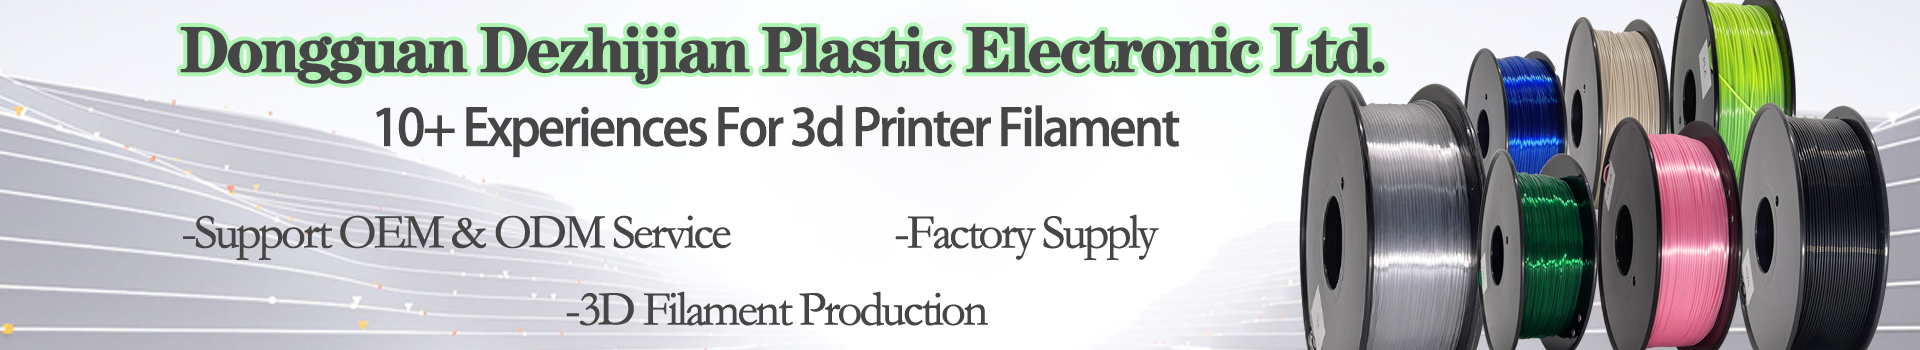 PinRui 3D Printer 1.75mm Silk PLA Filament For 3D Printer